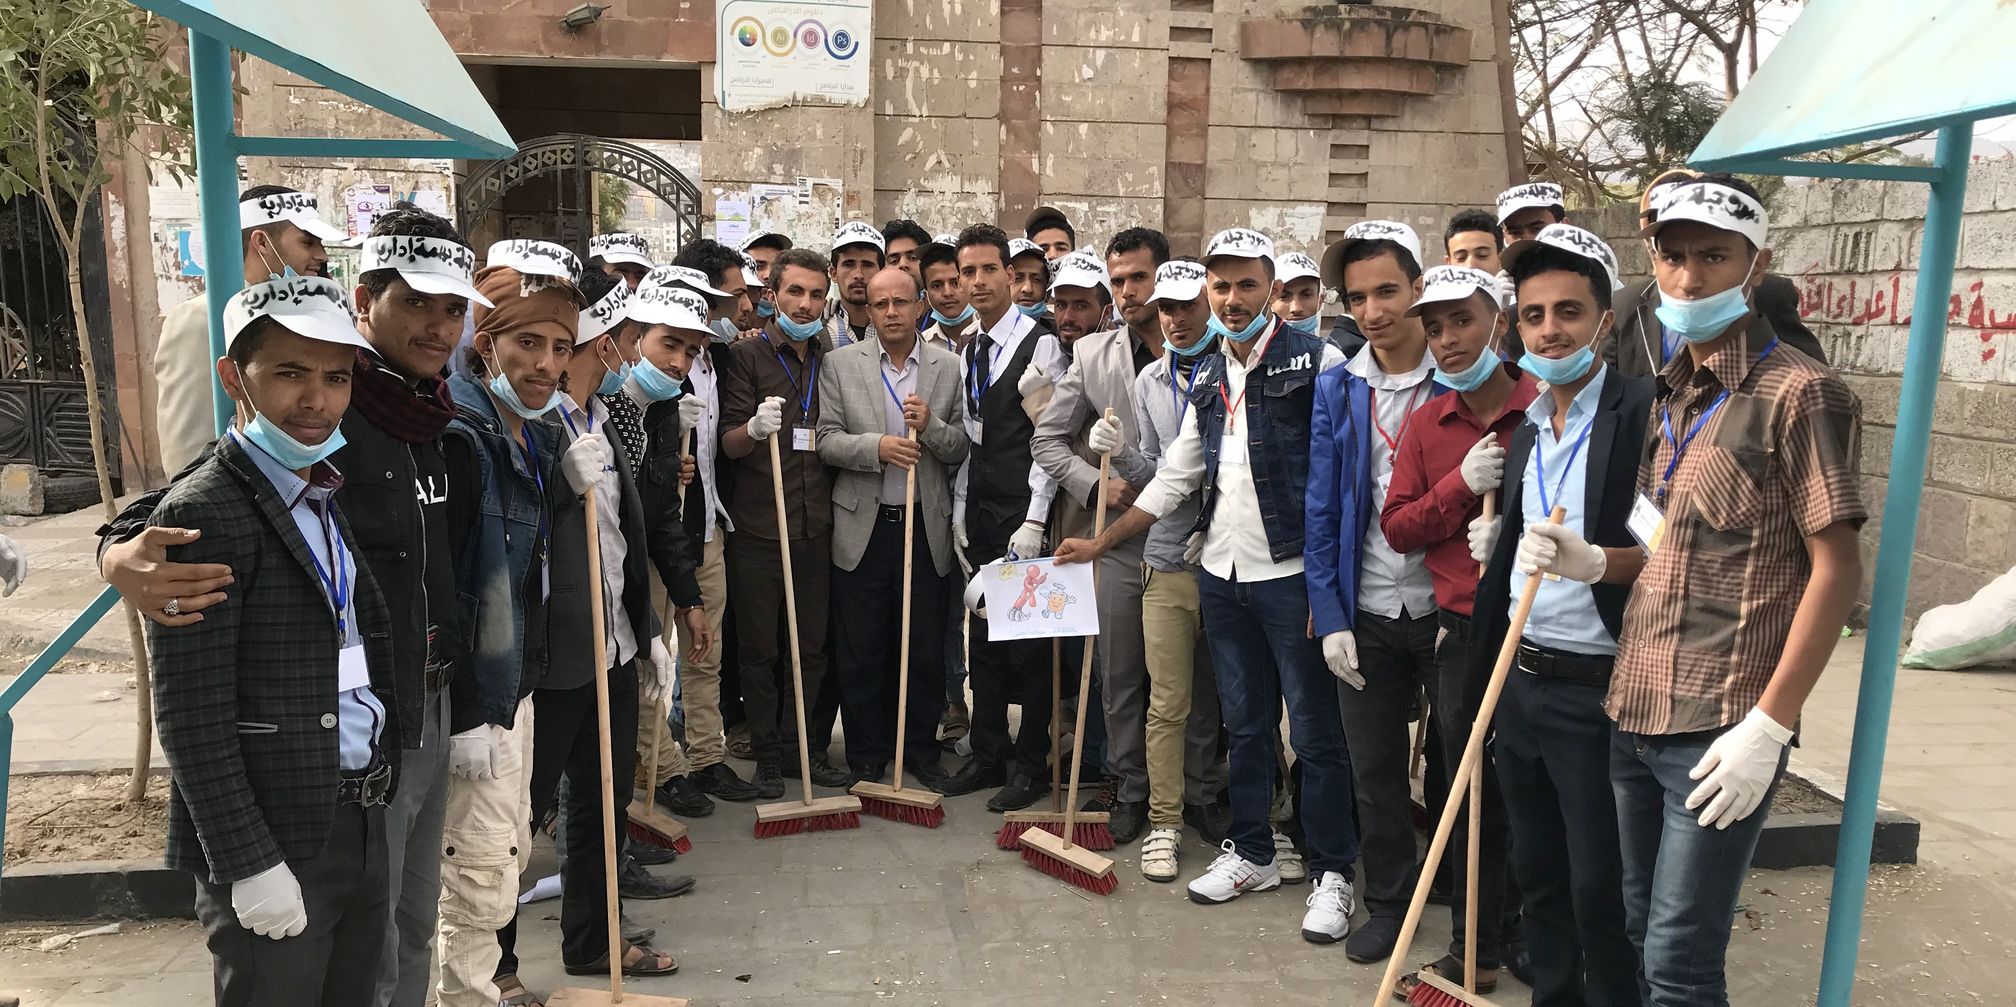 حملة نظافة مرافق الجامعة تحت شعار صورة جميلة بهمة إدارية 3-2-2018م